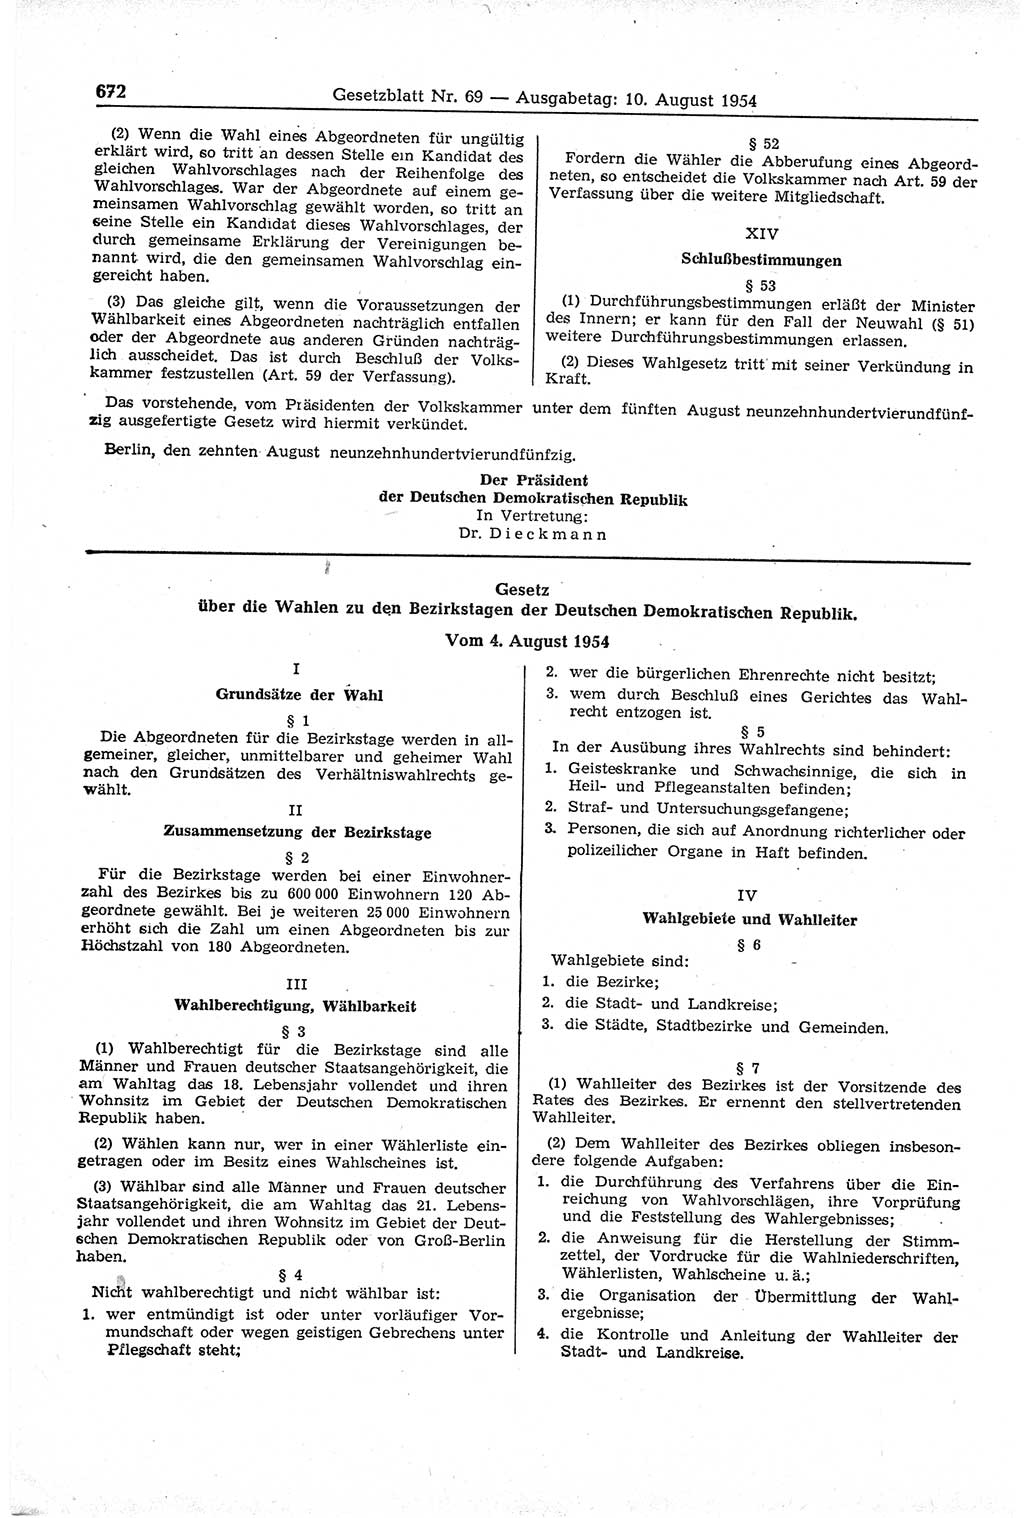 Gesetzblatt (GBl.) der Deutschen Demokratischen Republik (DDR) 1954, Seite 672 (GBl. DDR 1954, S. 672)